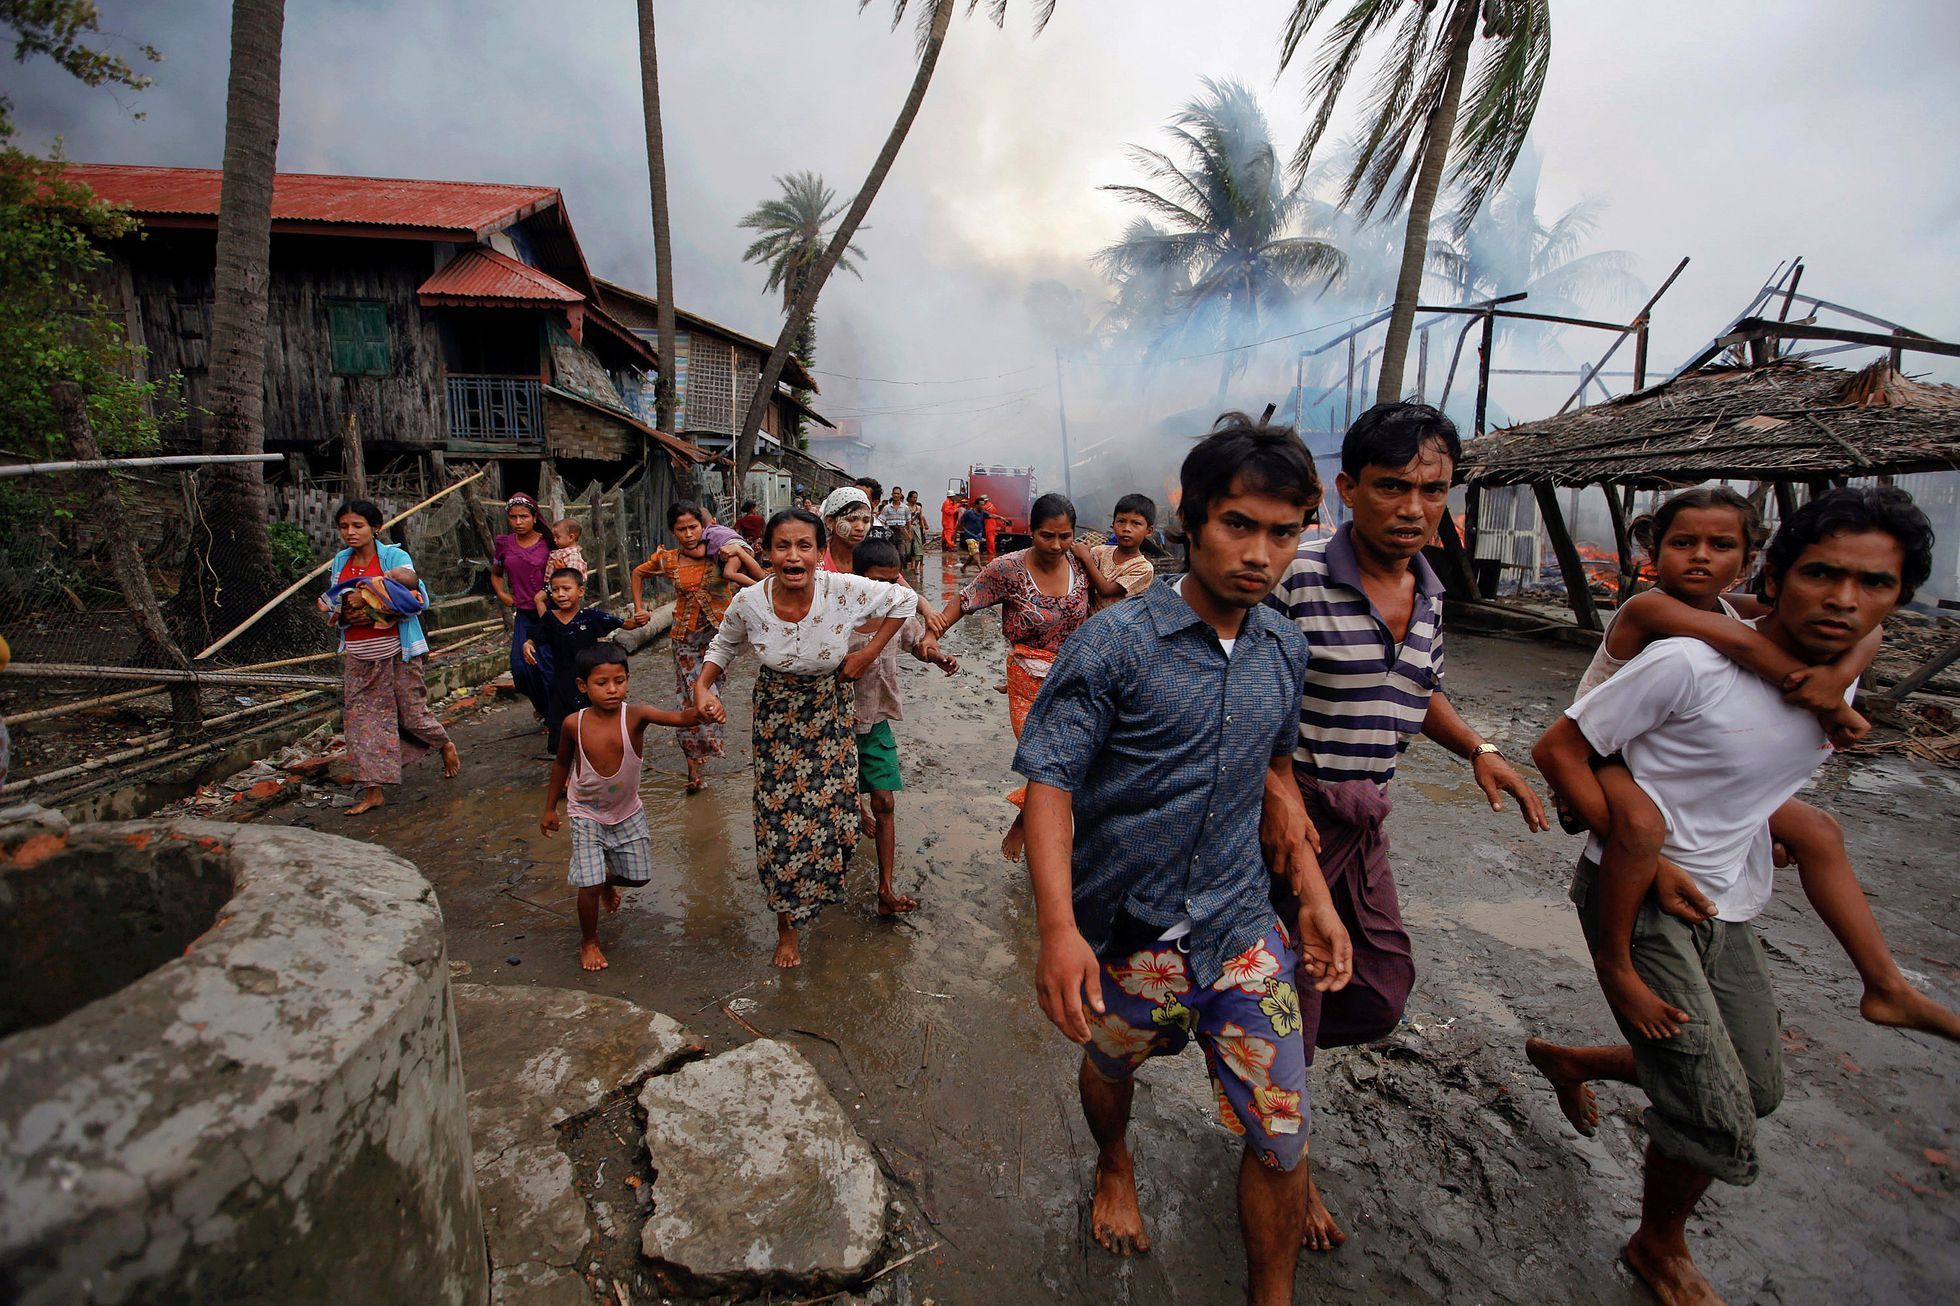 Pronásledování Rohingů v Barmě